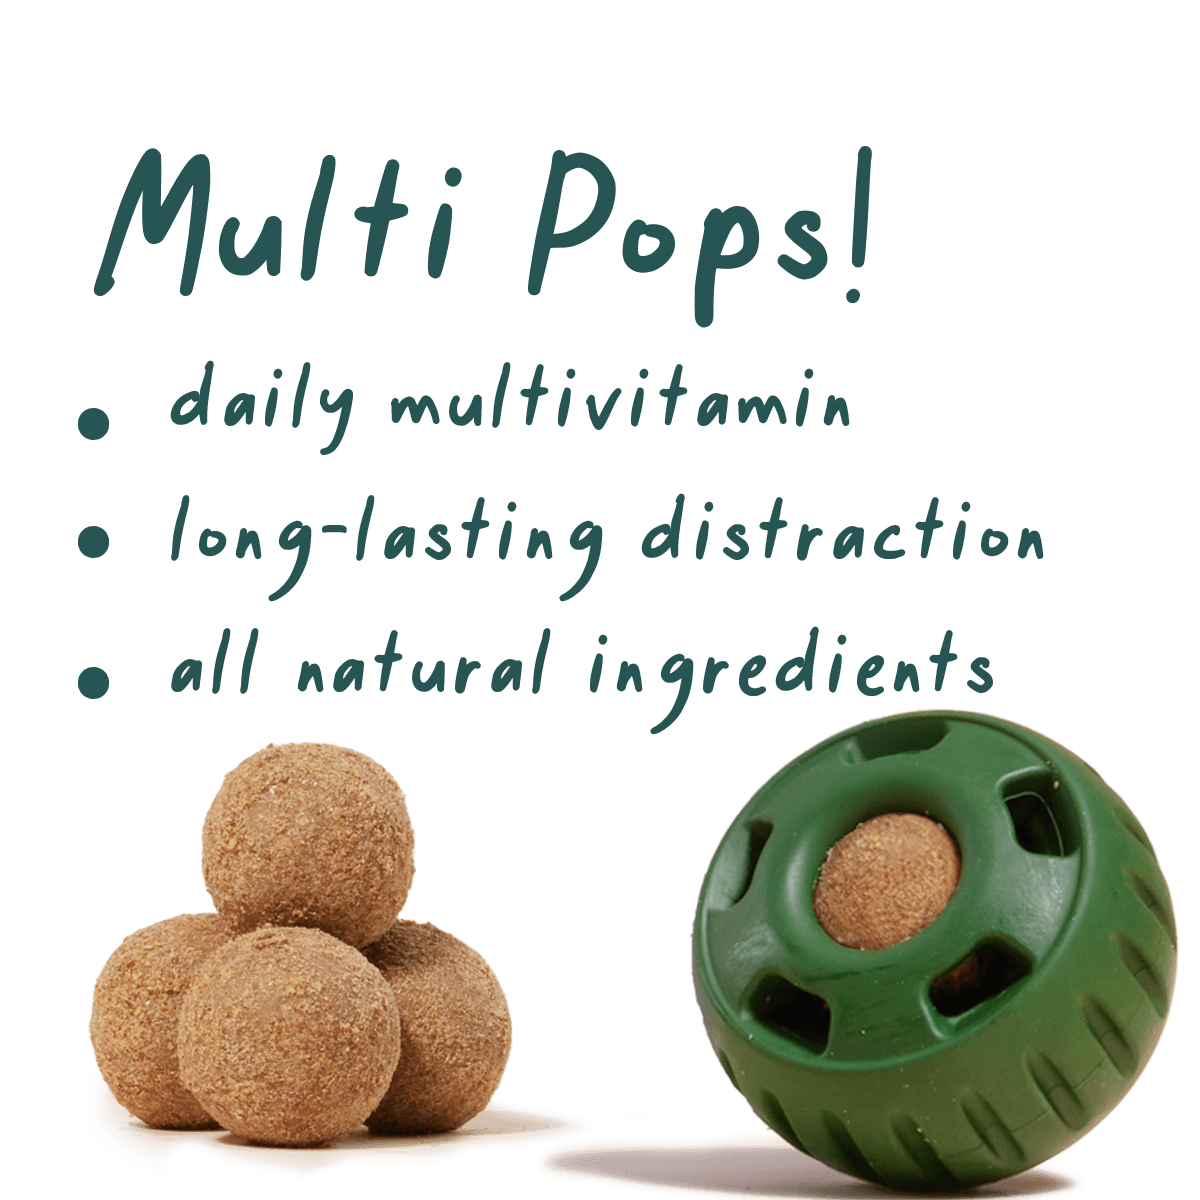 Multi-Vitamin Pops